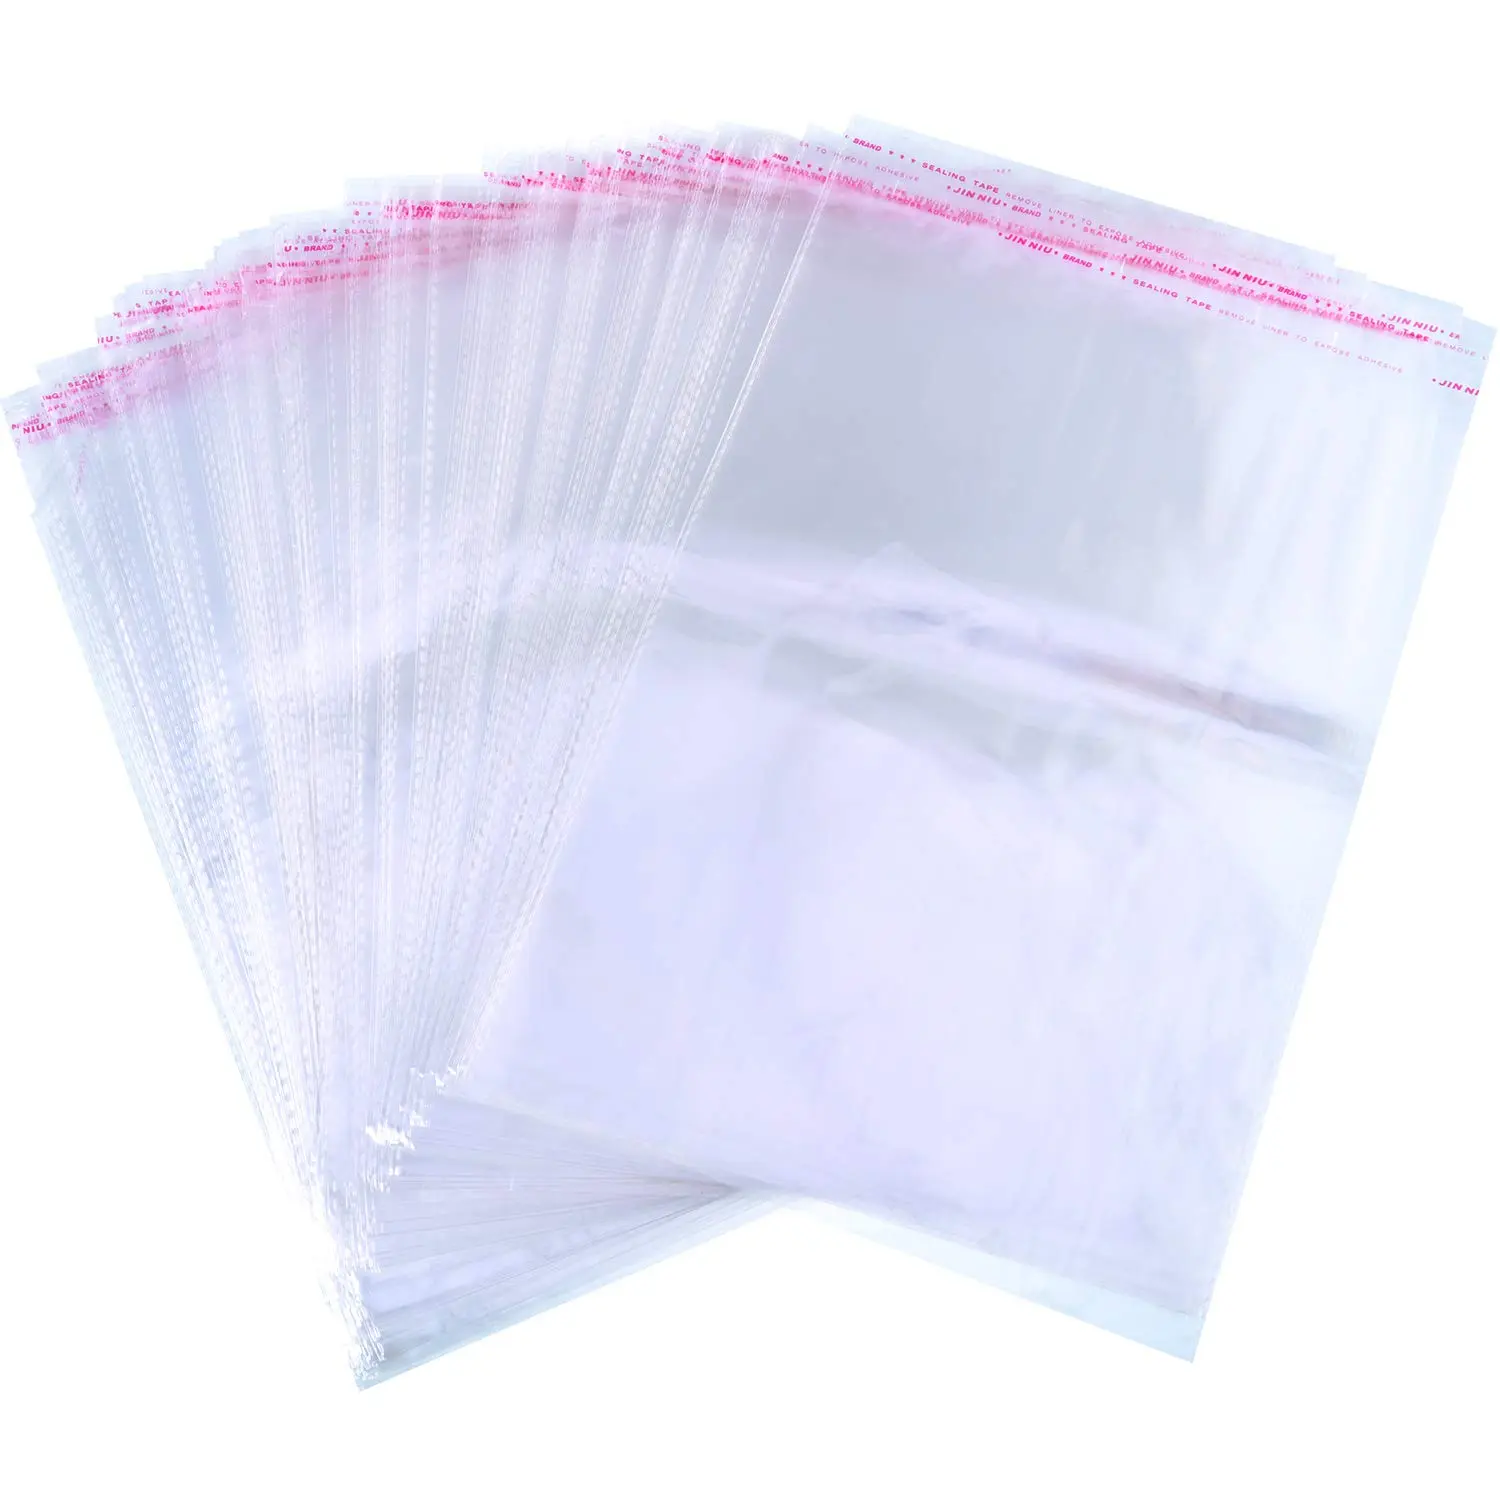 precio de bolsas de plastico transparente - Cuánto pesa una bolsa de plástico transparente